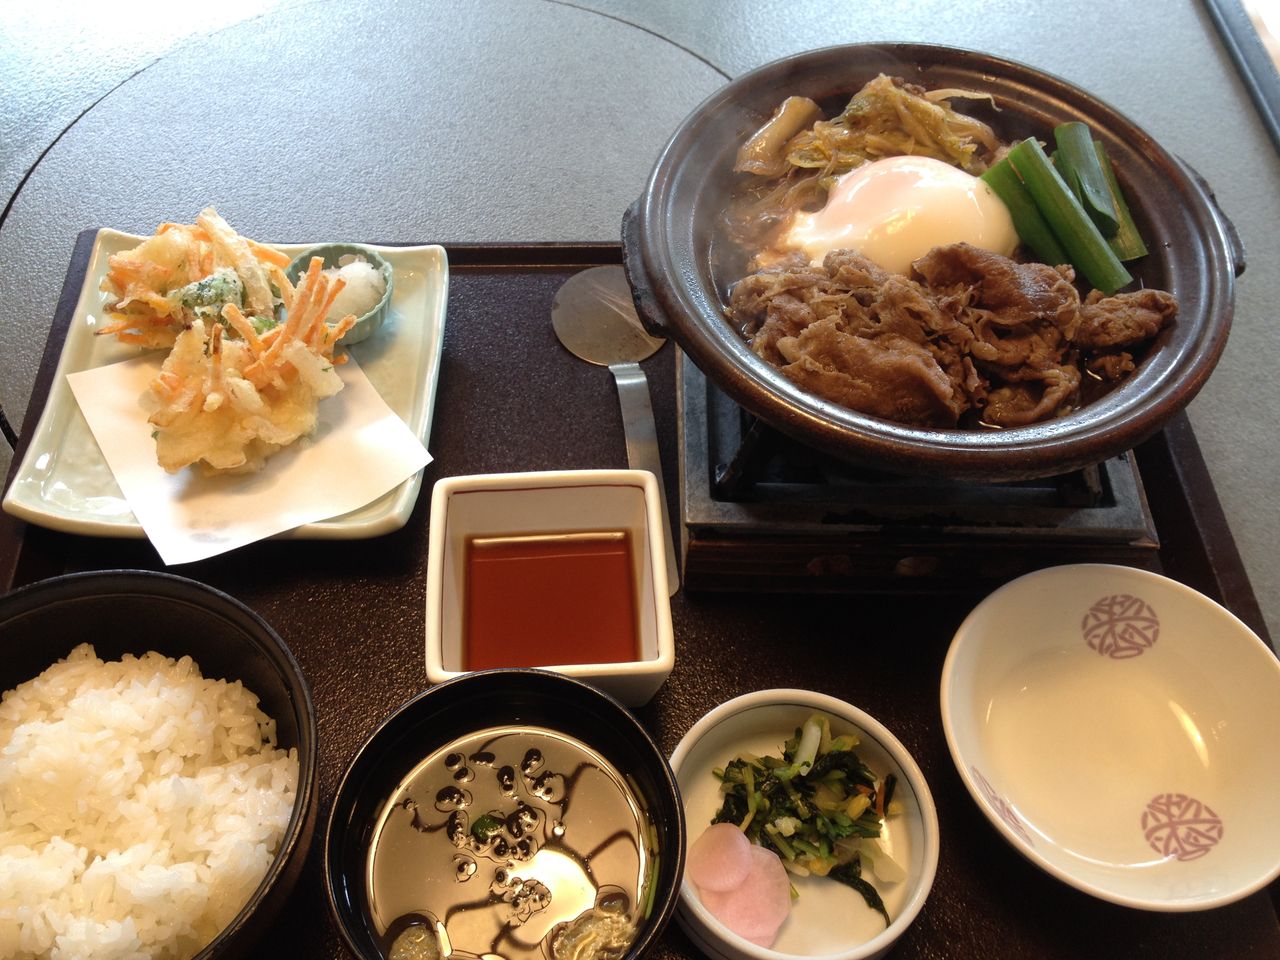 かごの屋 の日替わり昼膳 すき焼きと野菜のかき揚げ 神戸 姫路で一人お昼ごはん